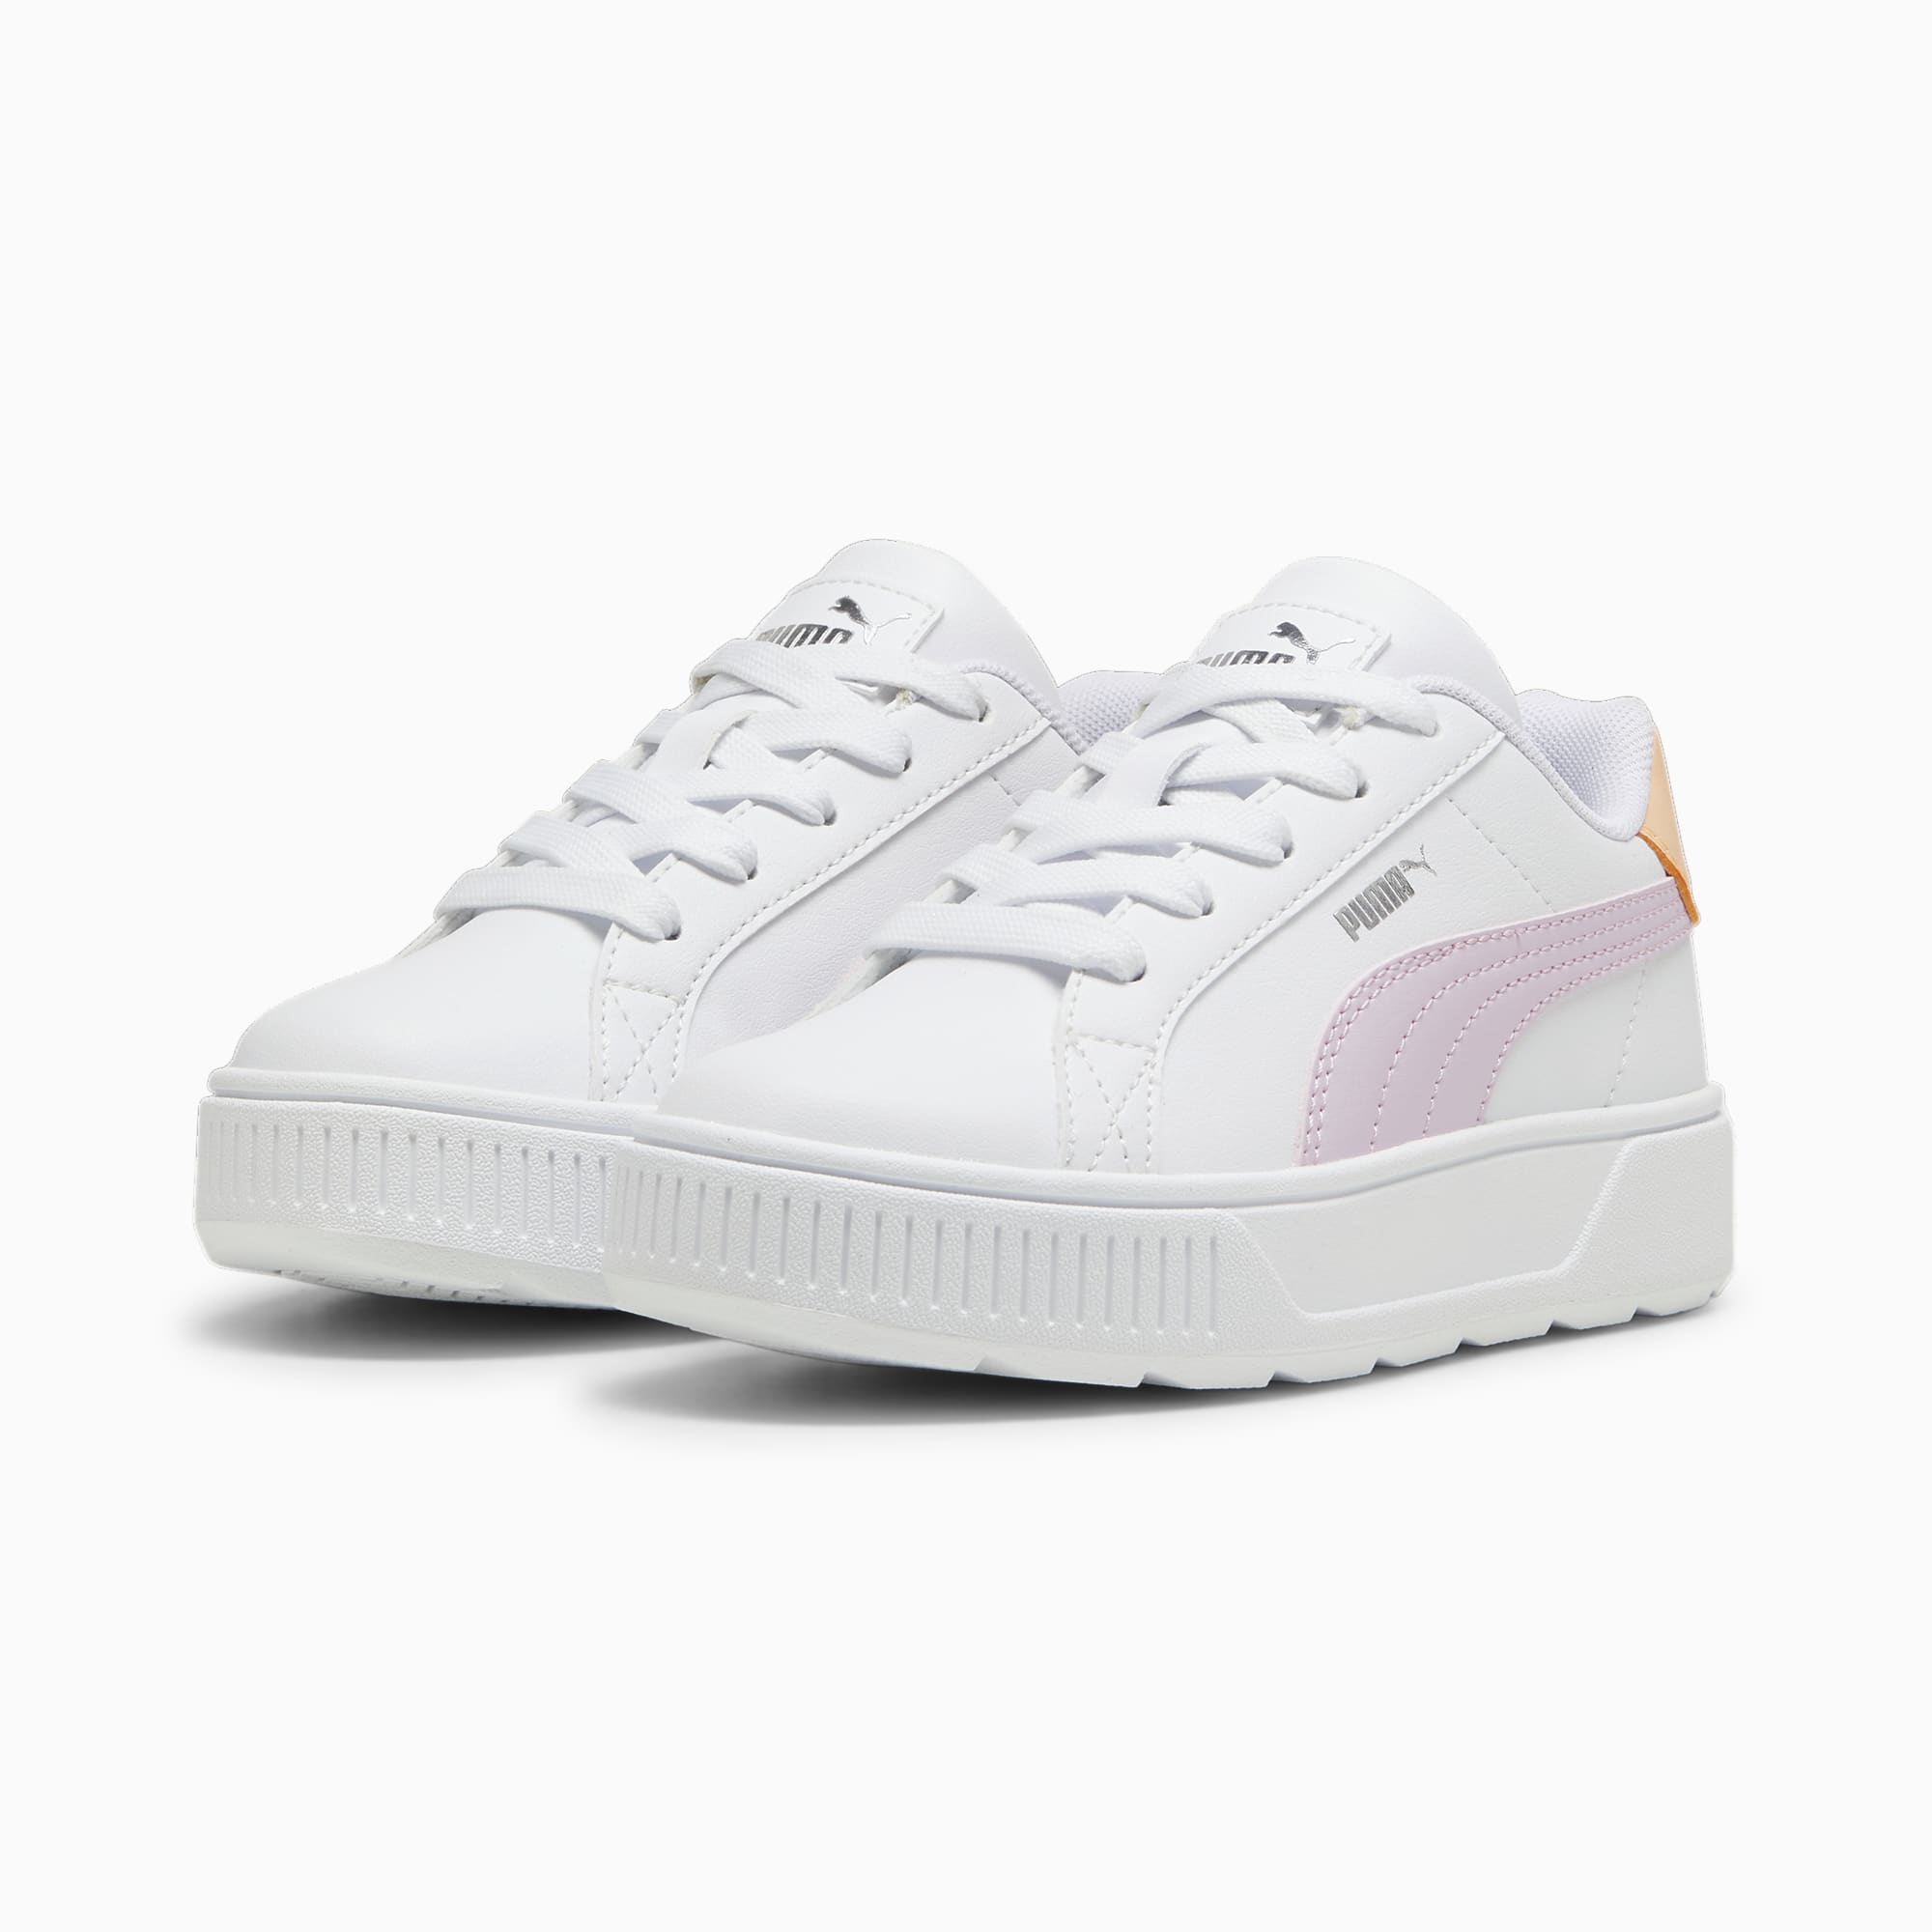 PUMA Karmen L Sneakers Kids, White/Grape Mist/Silver, Size 33, Shoes